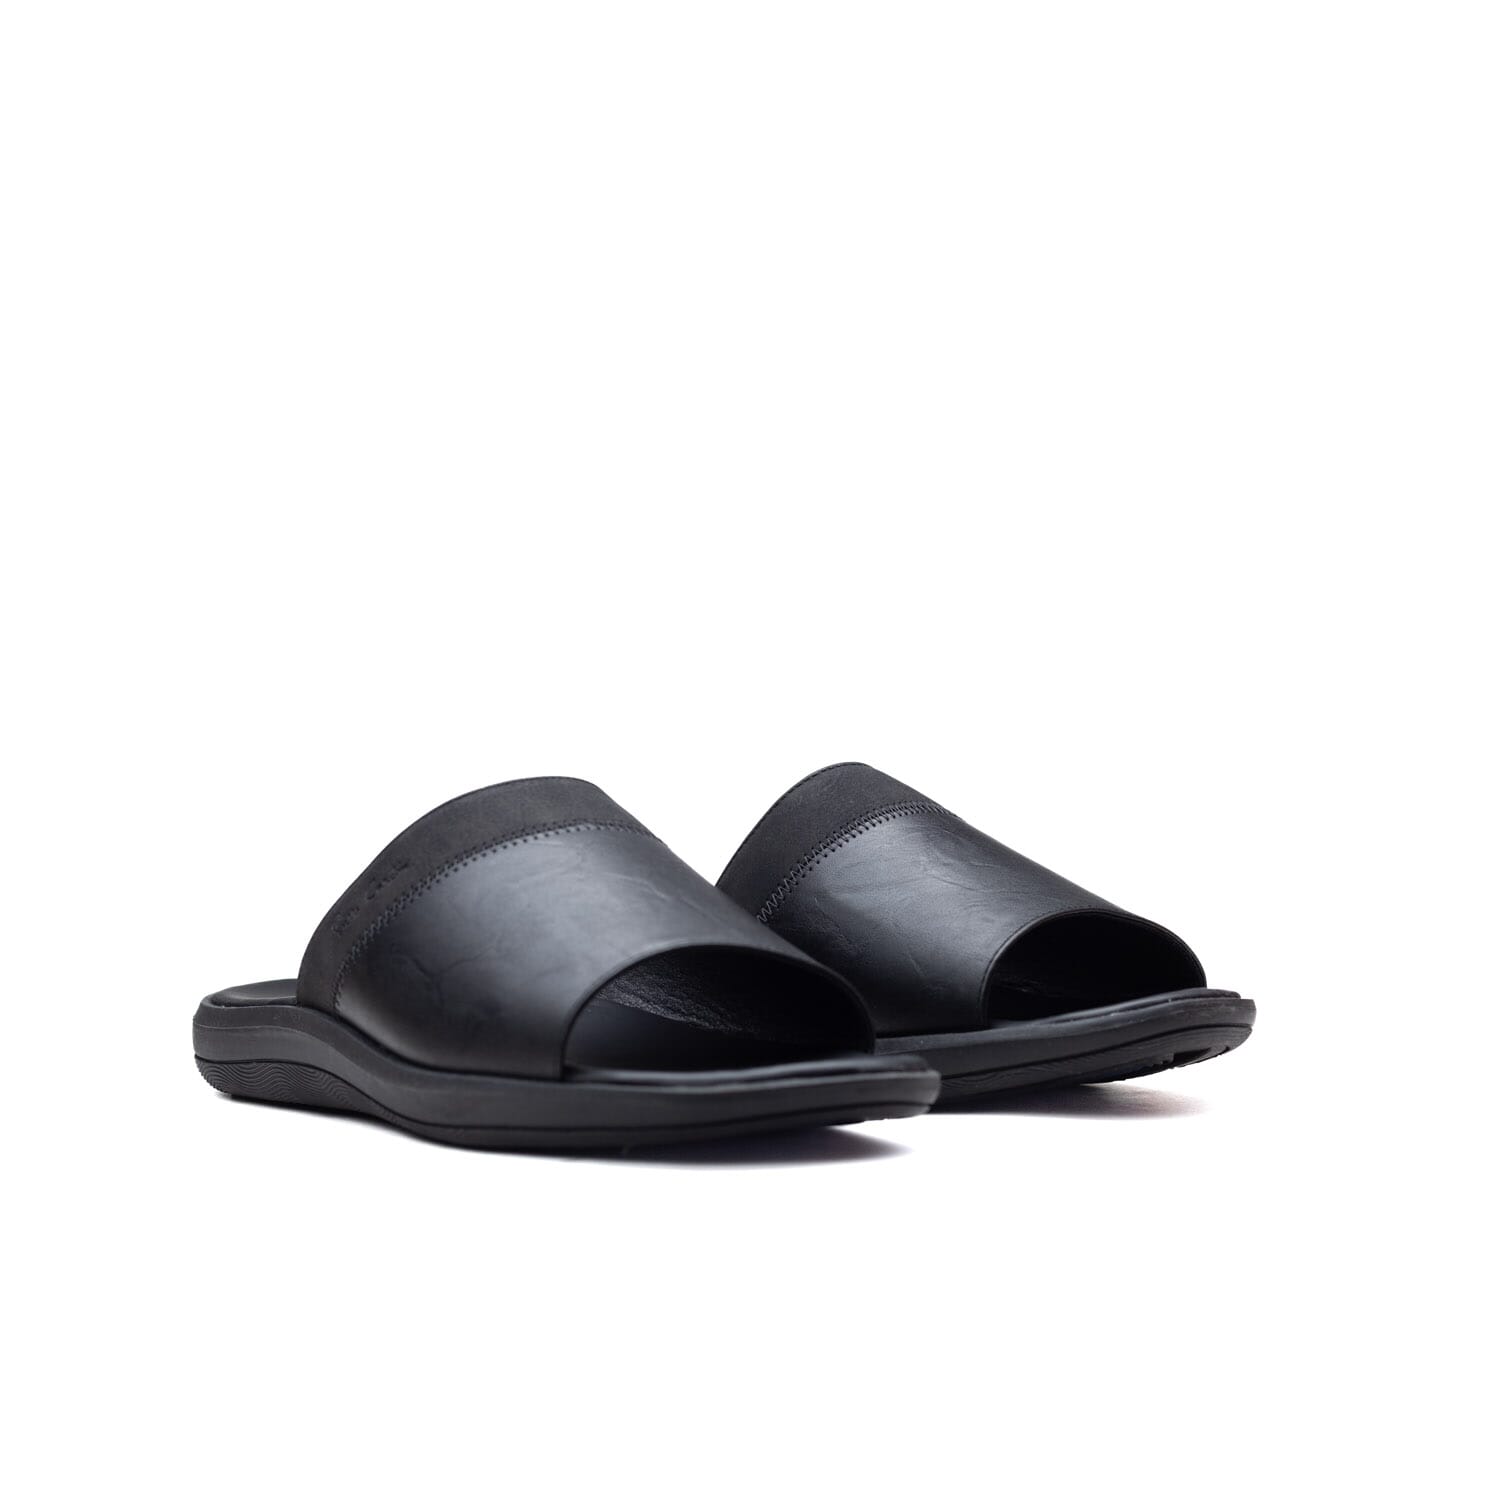 Pierre Cardin – Pcm562 -Black – Perocili Shoes